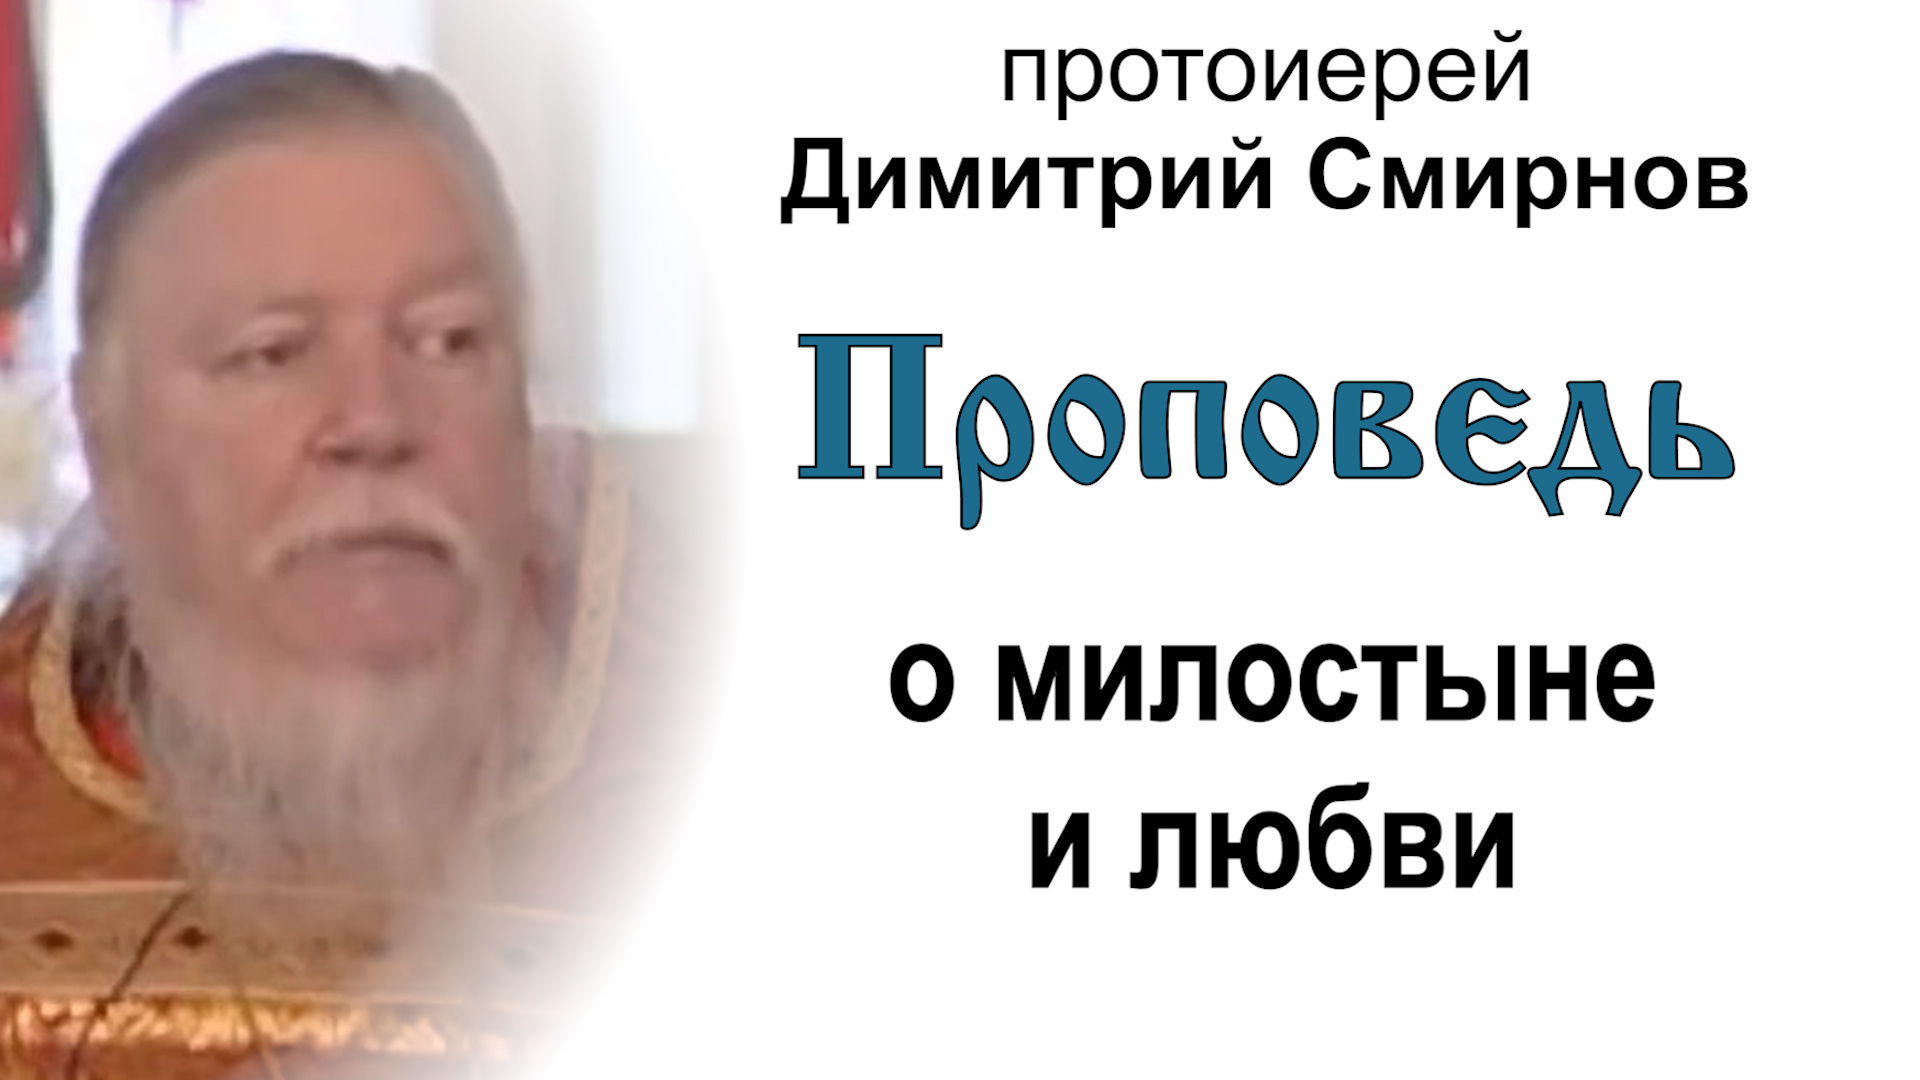 Проповедь о милостыне и любви (2006.04.28). Протоиерей Димитрий Смирнов